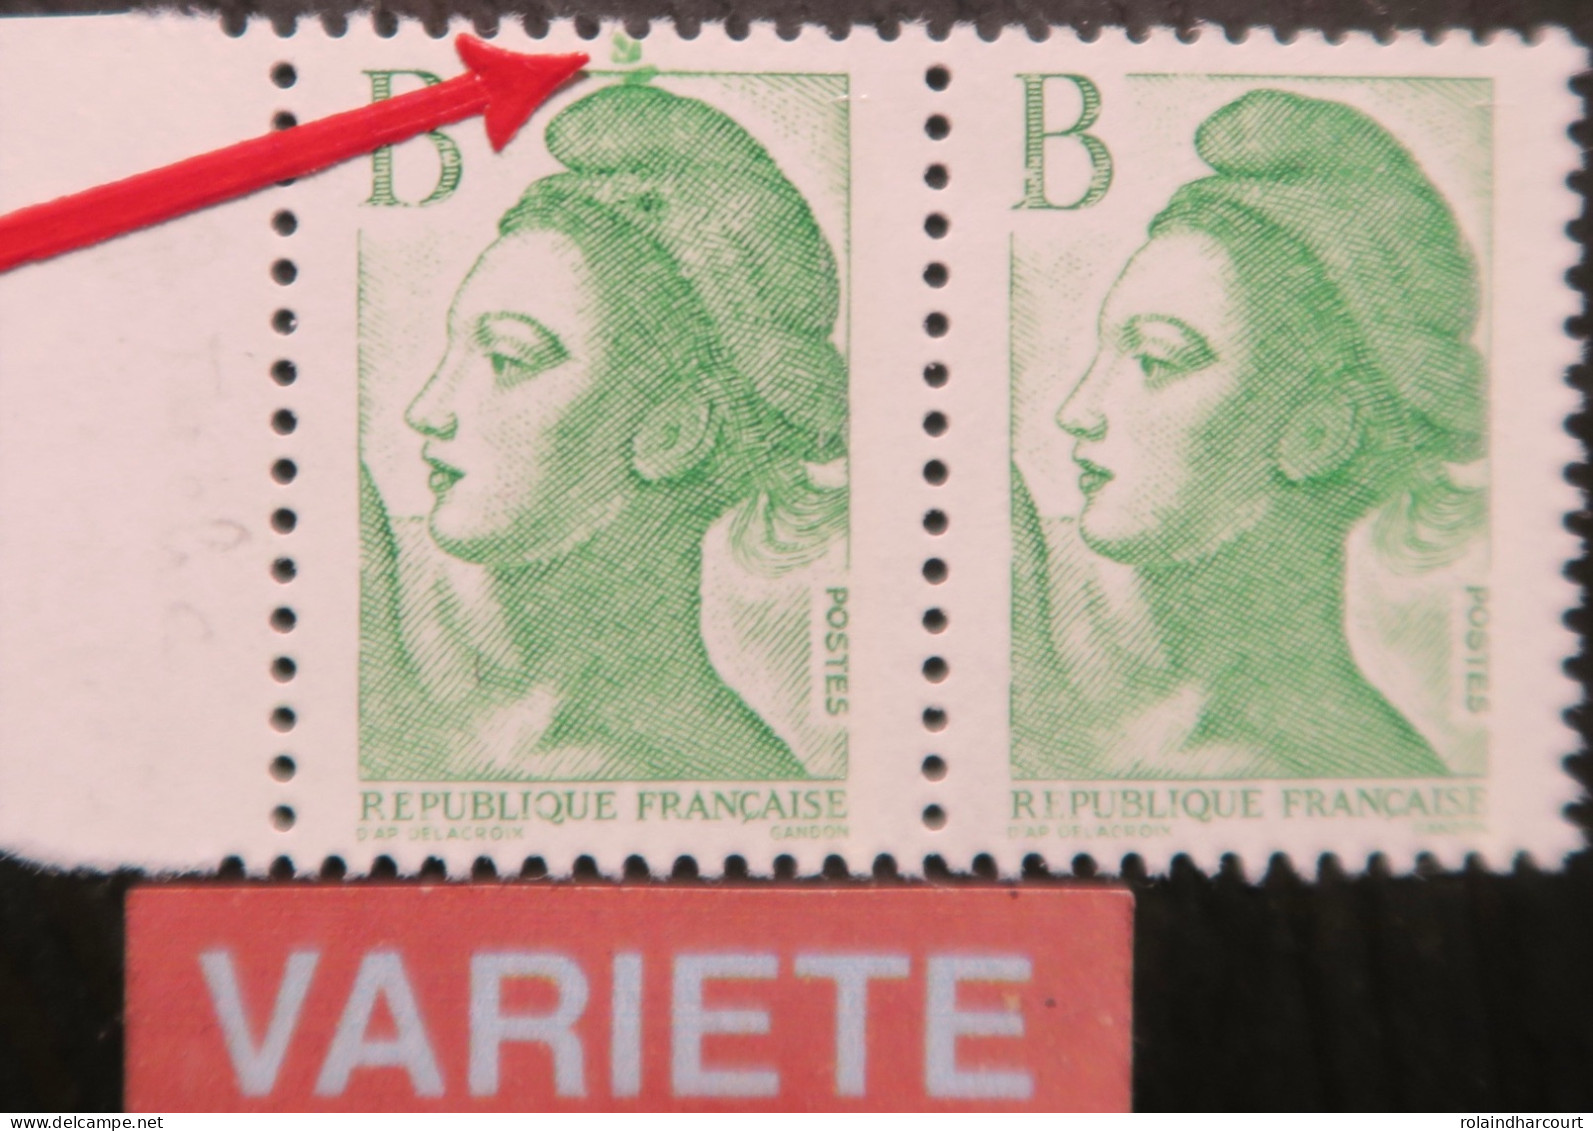 Enveloppe 1987 La Liberté avec lettre B vert -VILLERS COLLECTIONS